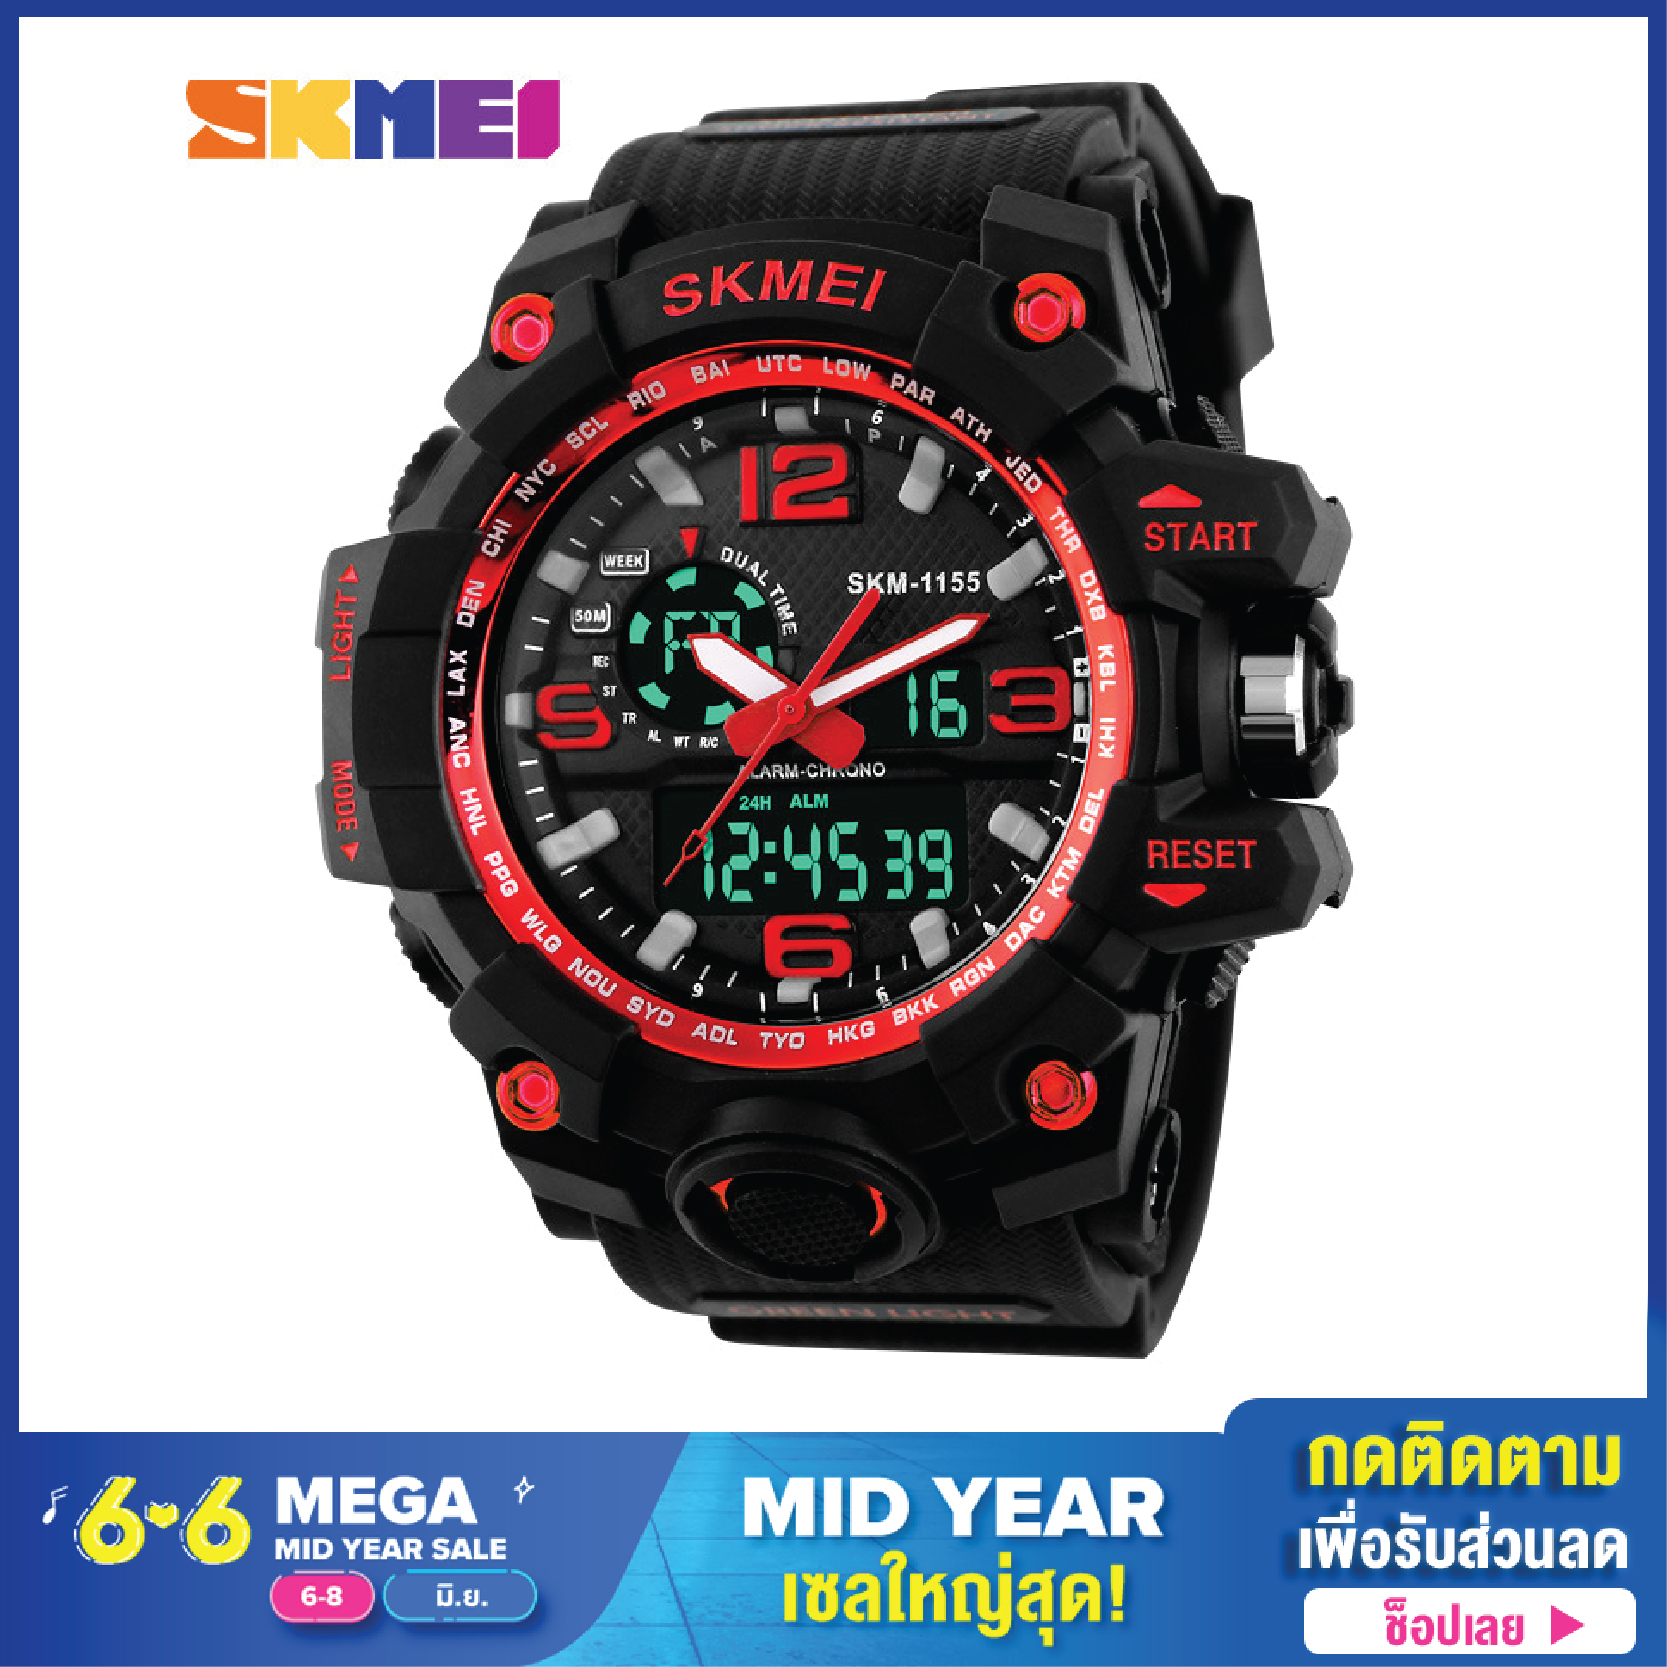 (สินค้าส่งจากไทย) ส่งเร็ว SKMEI 1155 นาฬิกา นาฬิกากันน้ำ นาฬิกาข้อมือดิจิตอล นาฬิกาควอตซ์ มัลติฟังชั่น สายเรซิน นาฬิกาผู้ชาย ผู้หญิง ลดราคา ดิจิตอล มัลติฟังชั่น ของแท้100% สินค้าพร้อมส่ง รุ่น SKSP01 (มีบริการเก็บเงินปลายทาง)